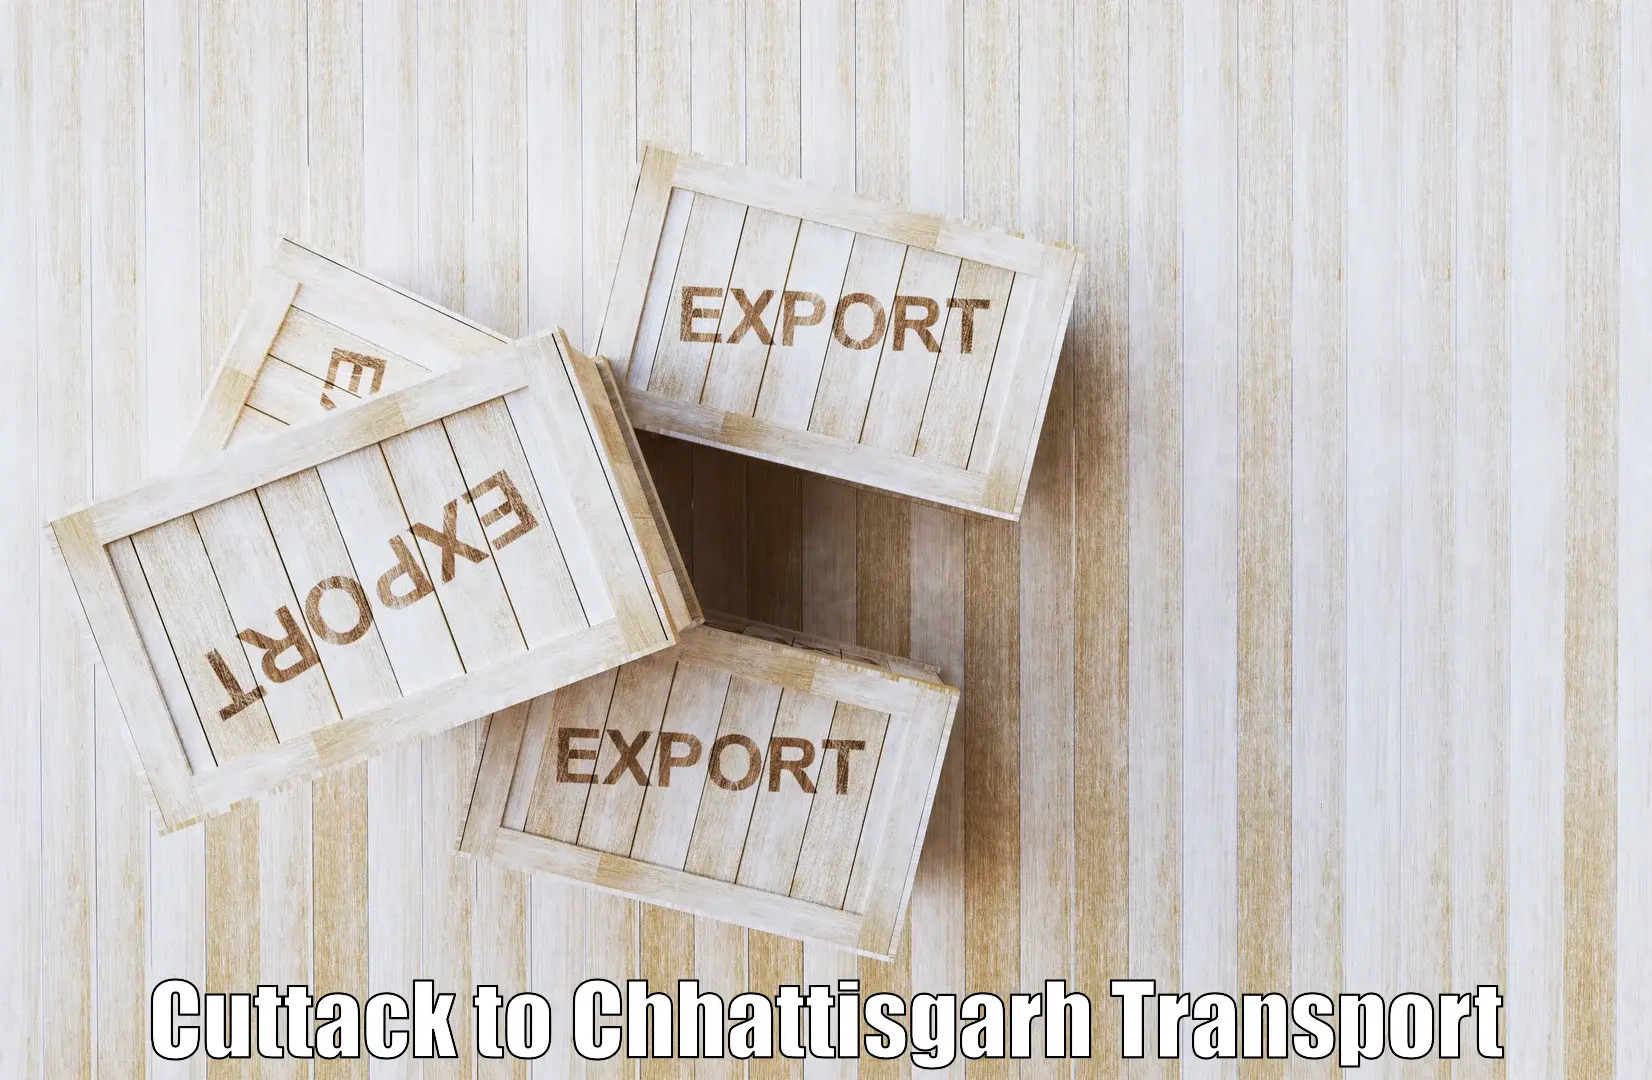 Cargo train transport services Cuttack to Chhattisgarh